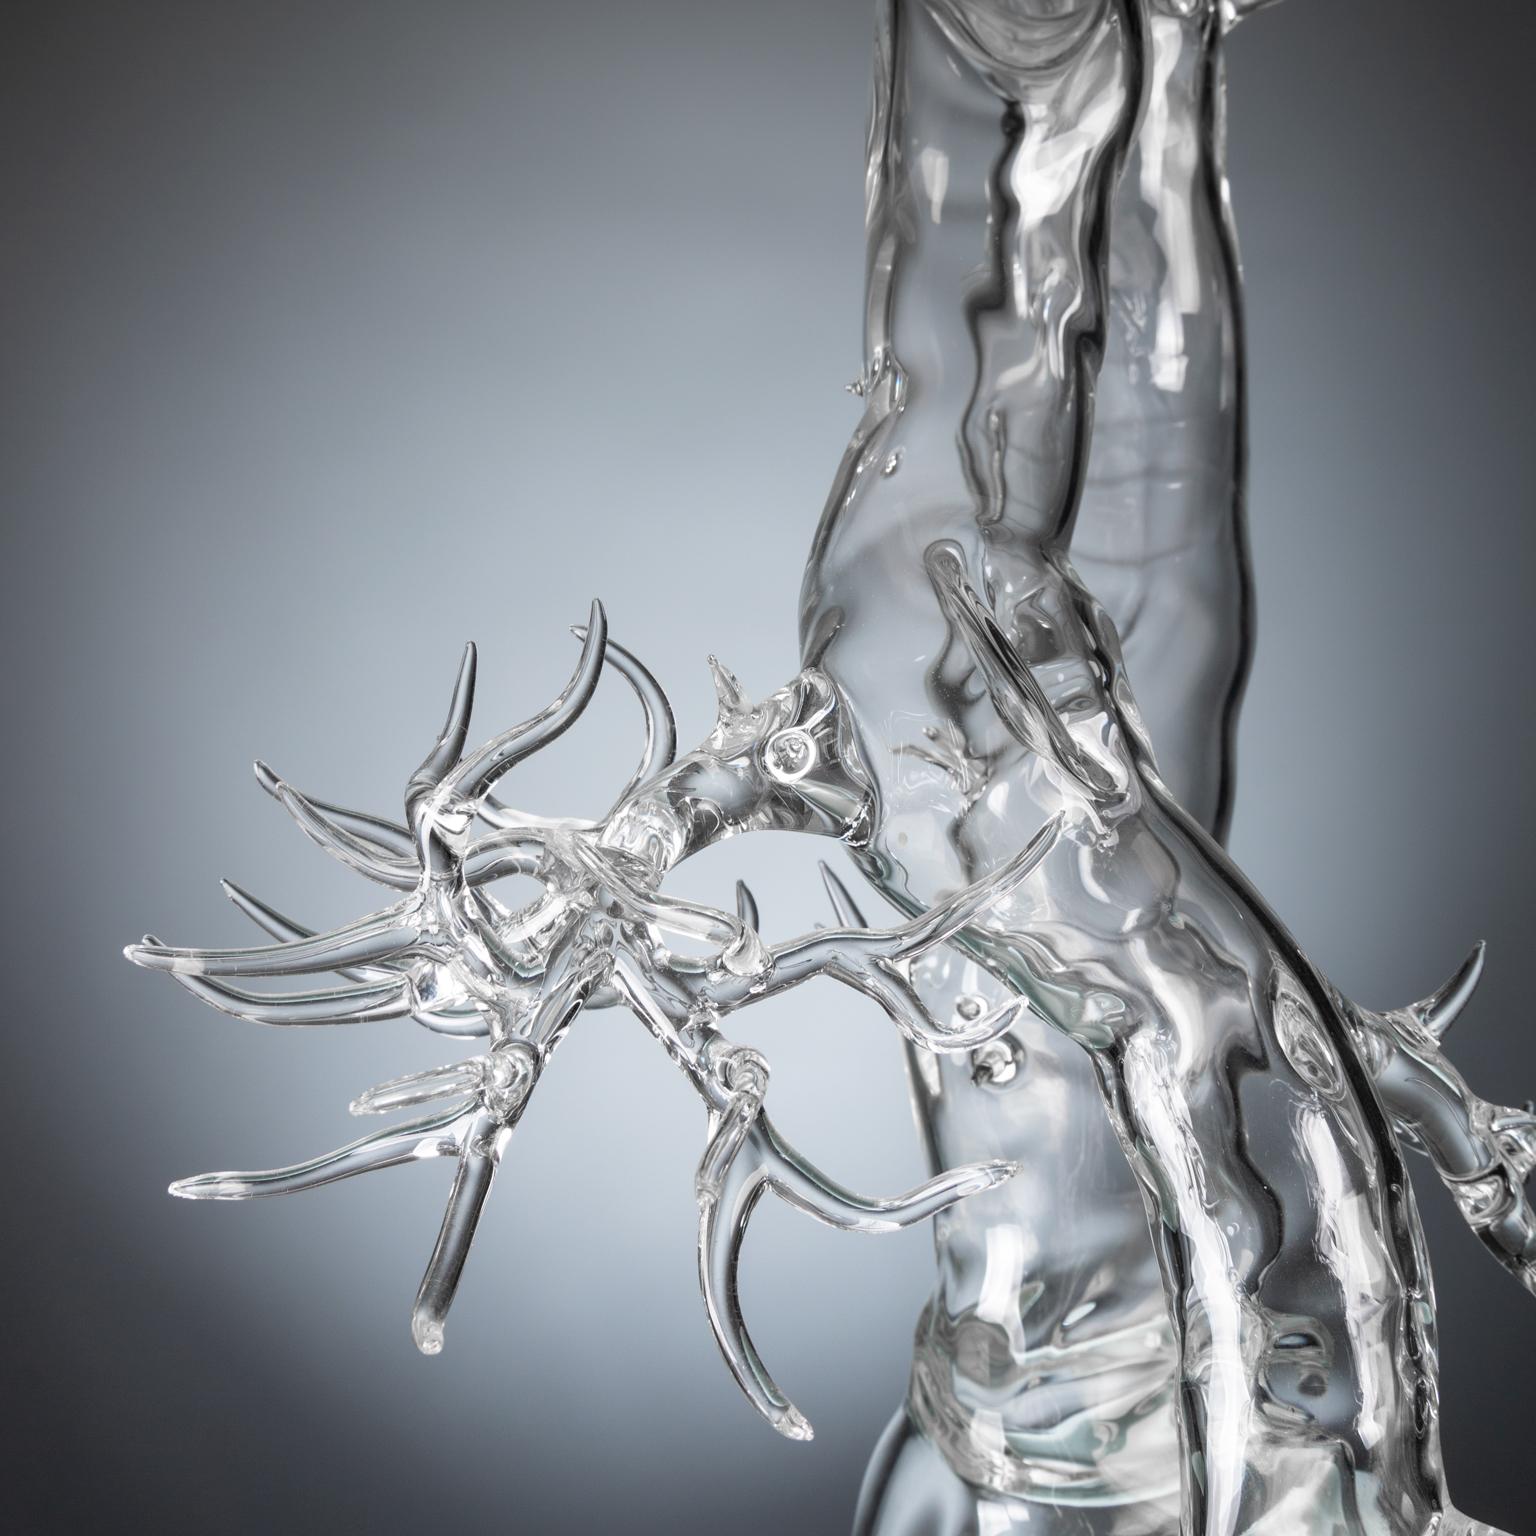 Contemporary Hand Blown Glass Bonsai Sculpture 2019 #01